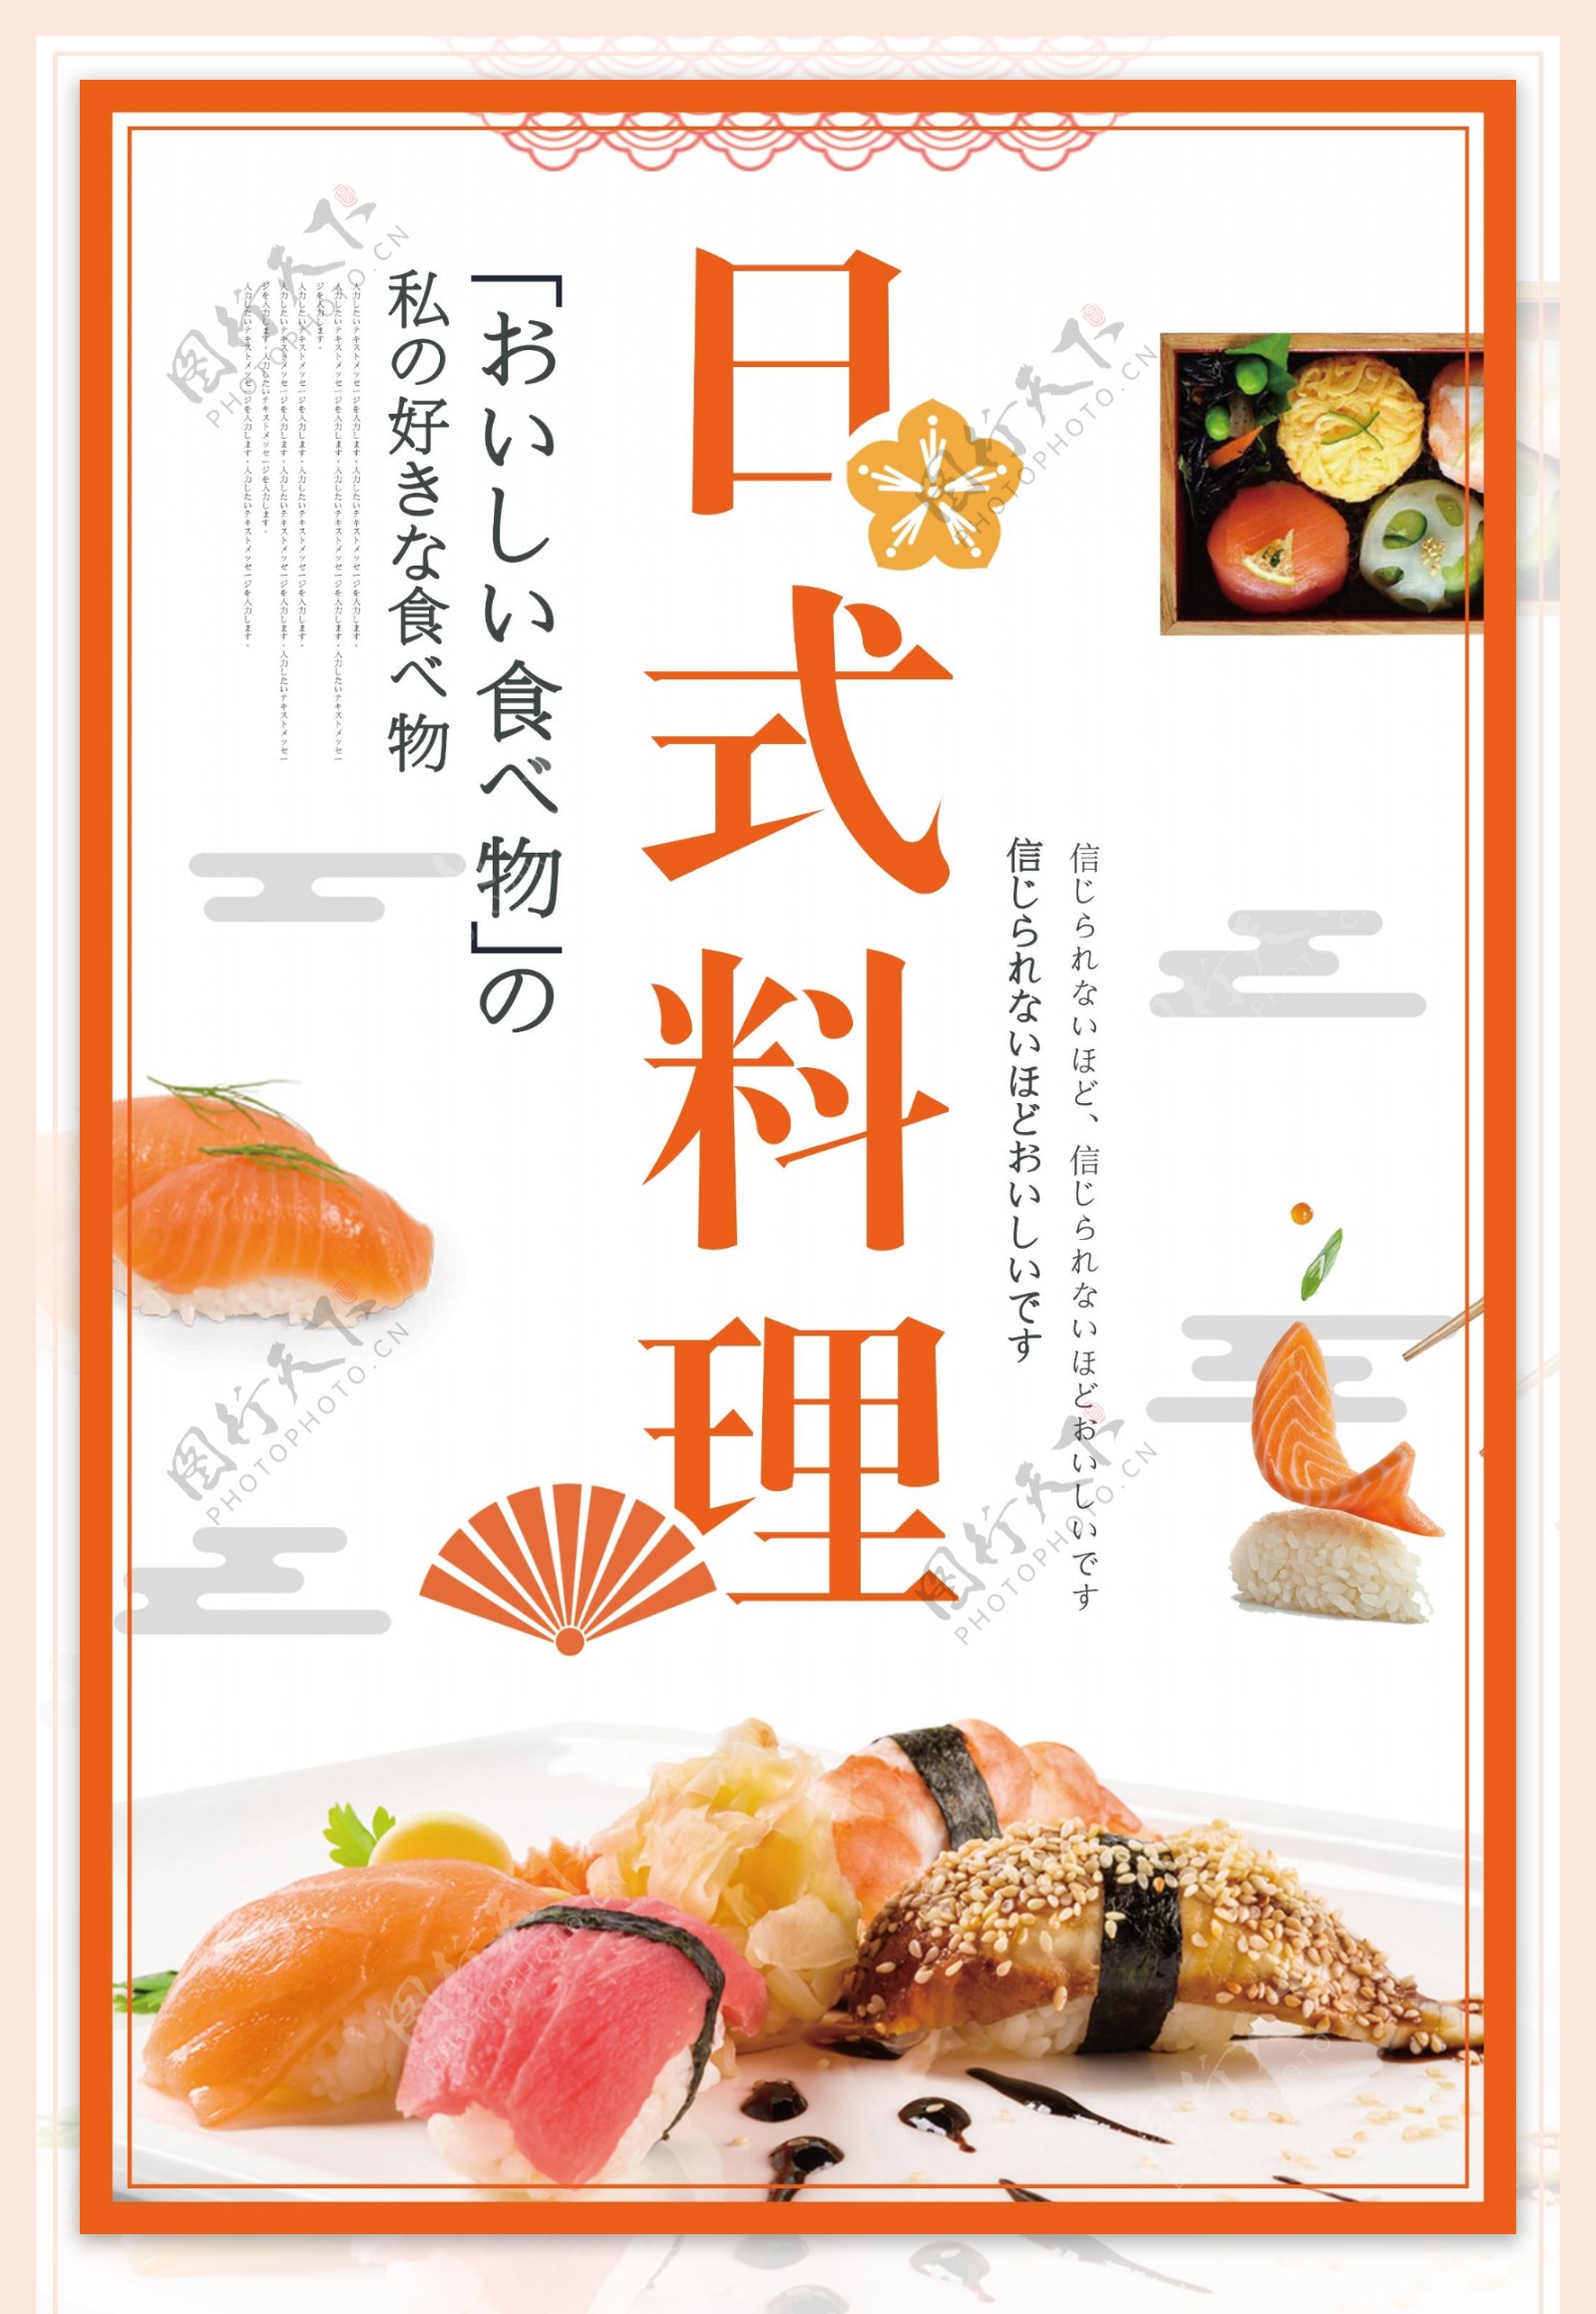 日式料理和风美食寿司海报